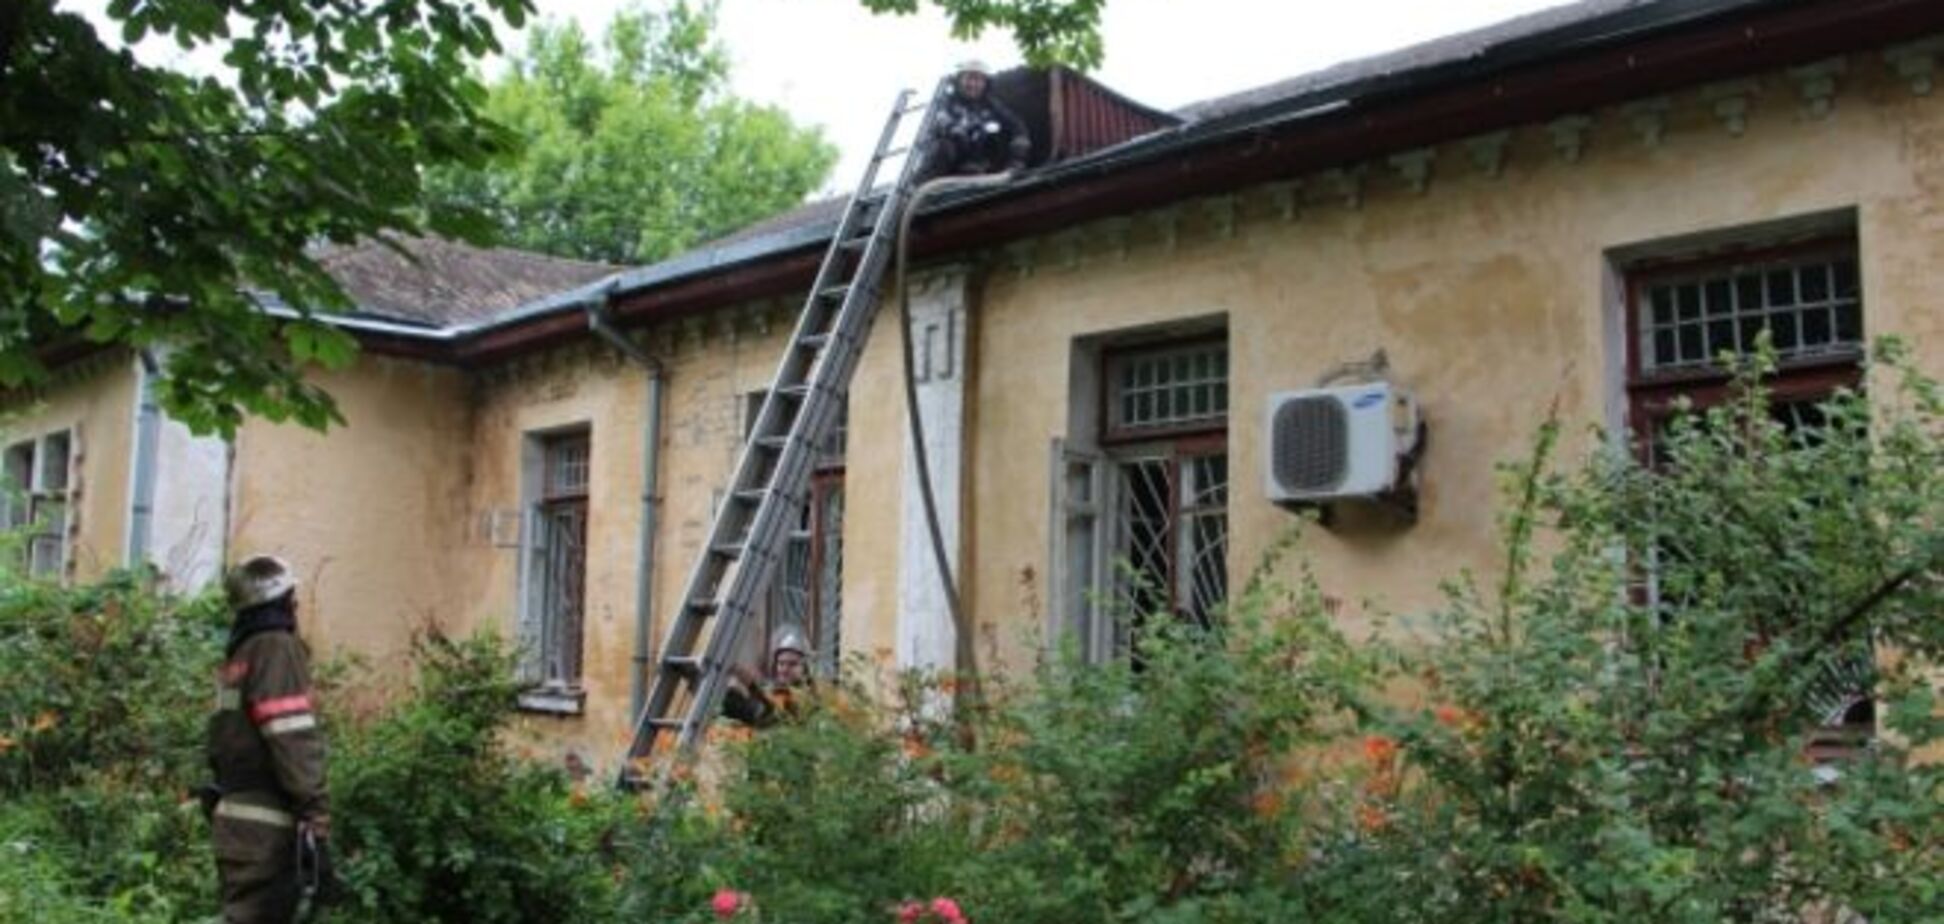 Пожар в психбольнице Киева: эвакуировали 35 человек